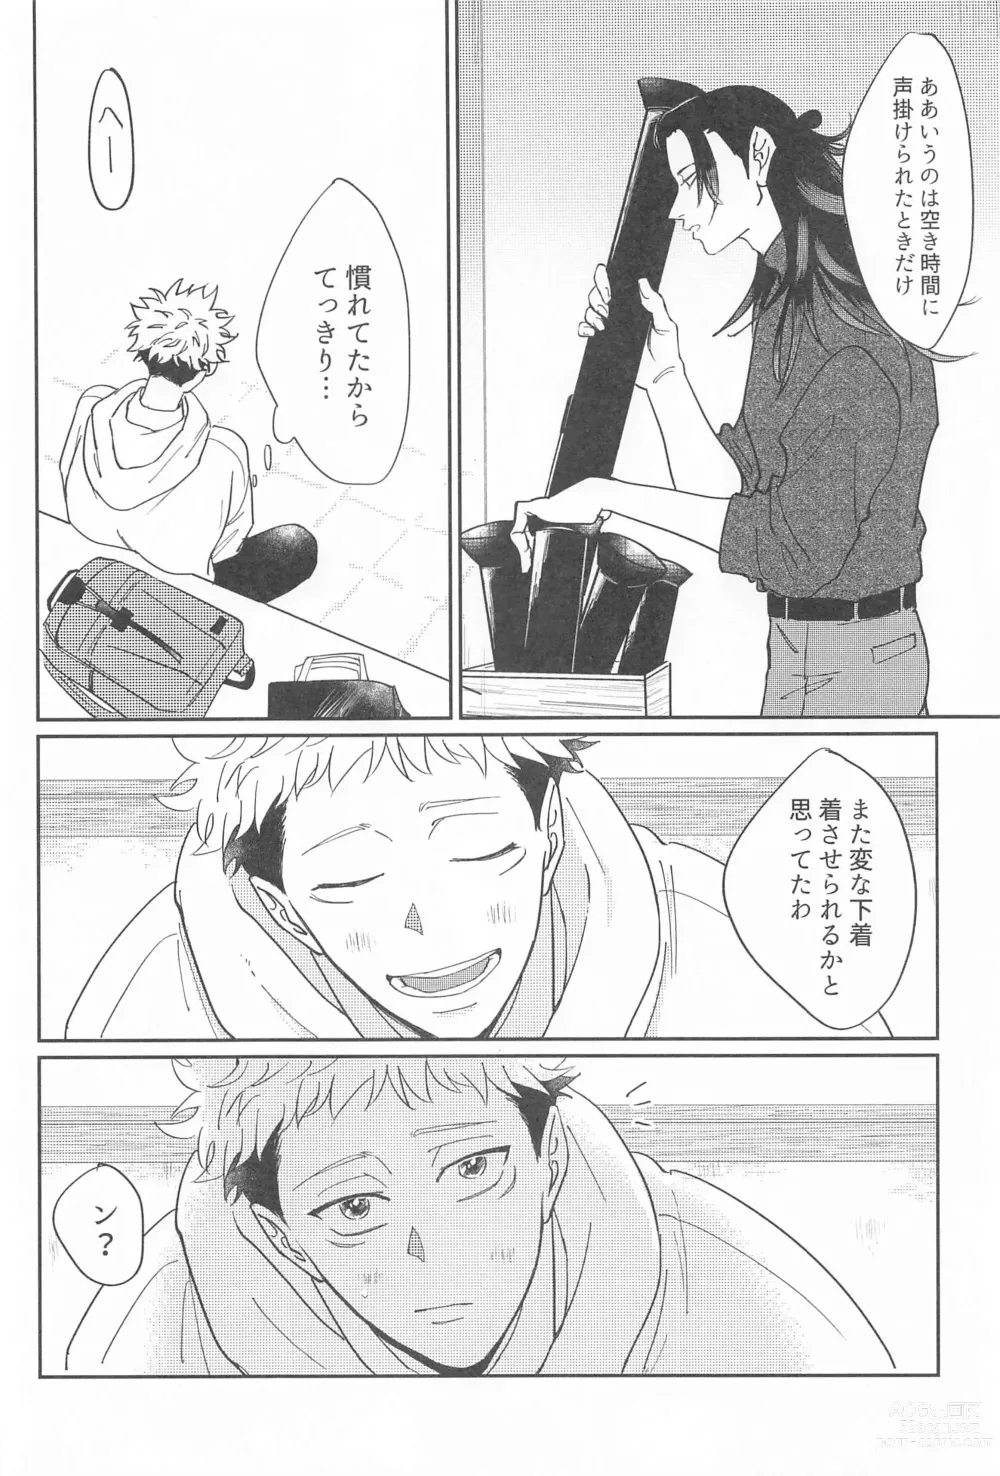 Page 9 of doujinshi Shikakukei no PENTAPRISM